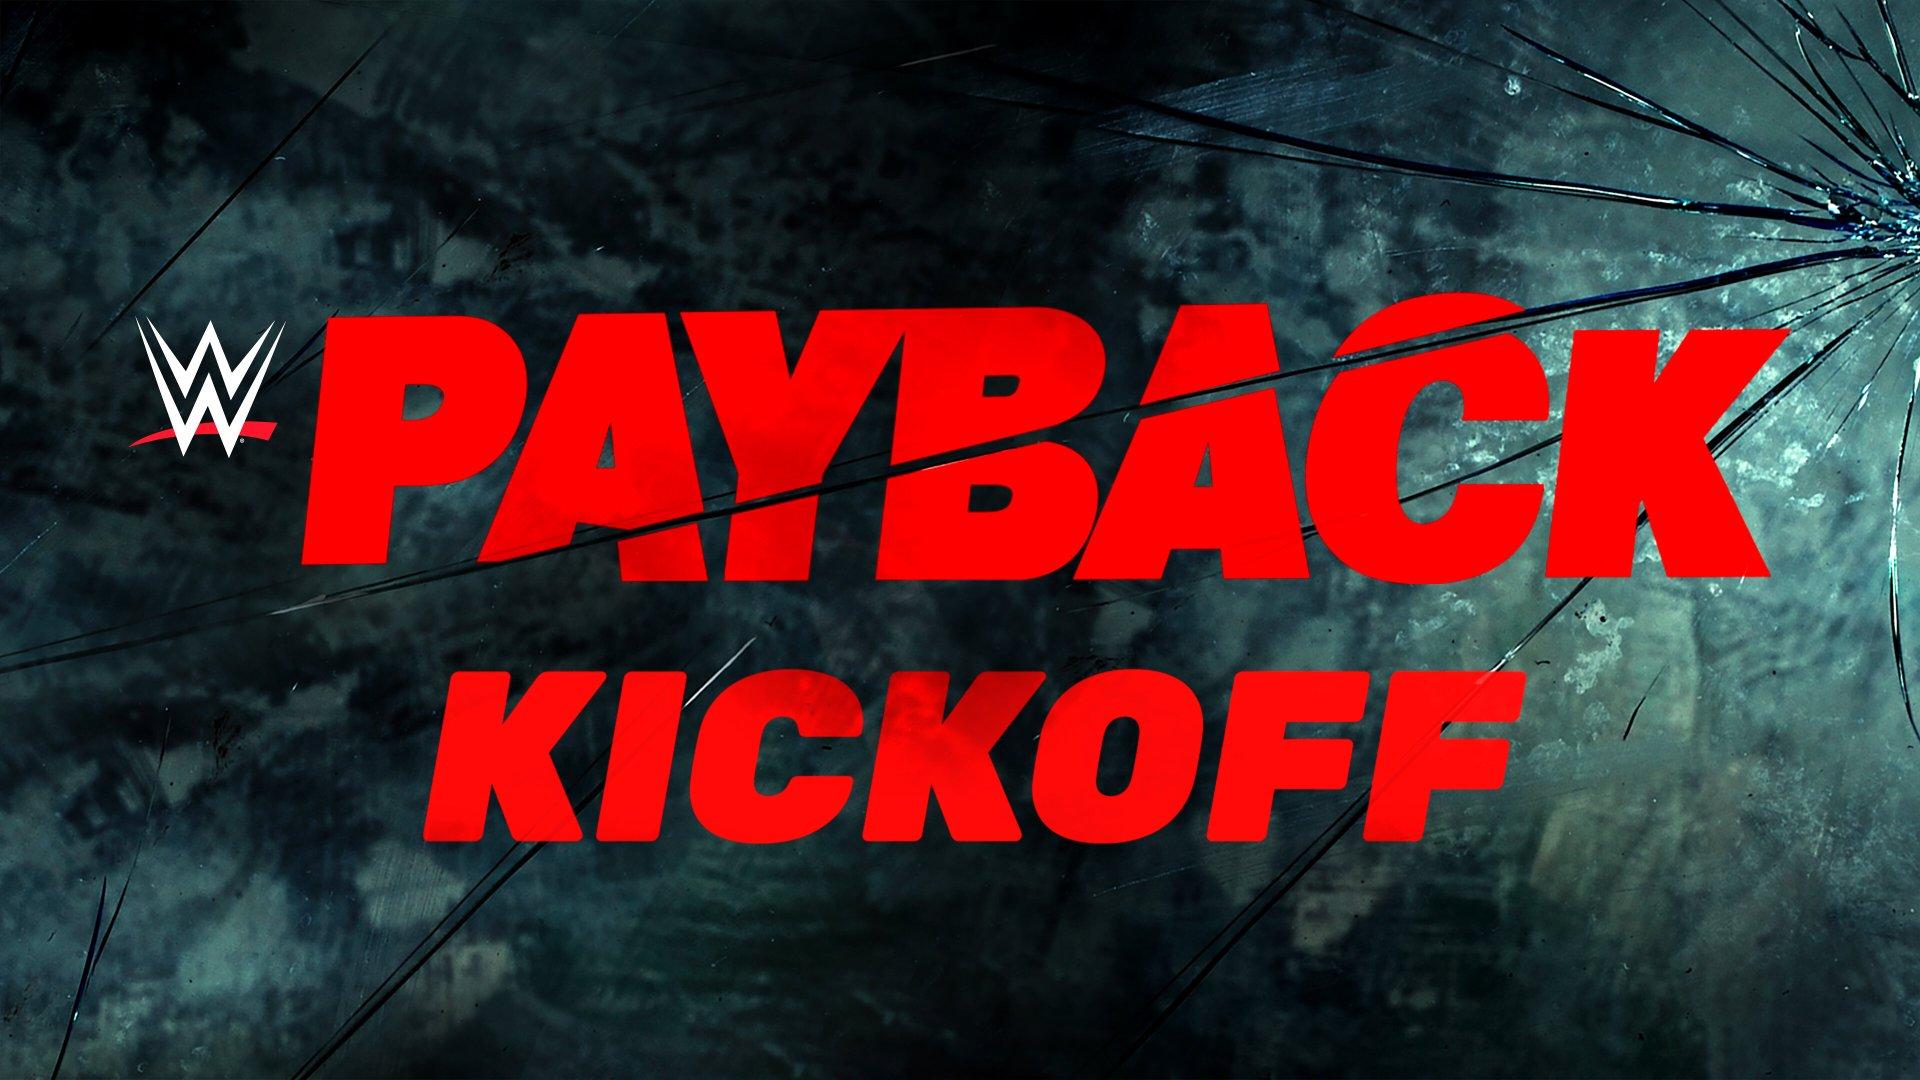 WWE Payback 2017 Kickoff